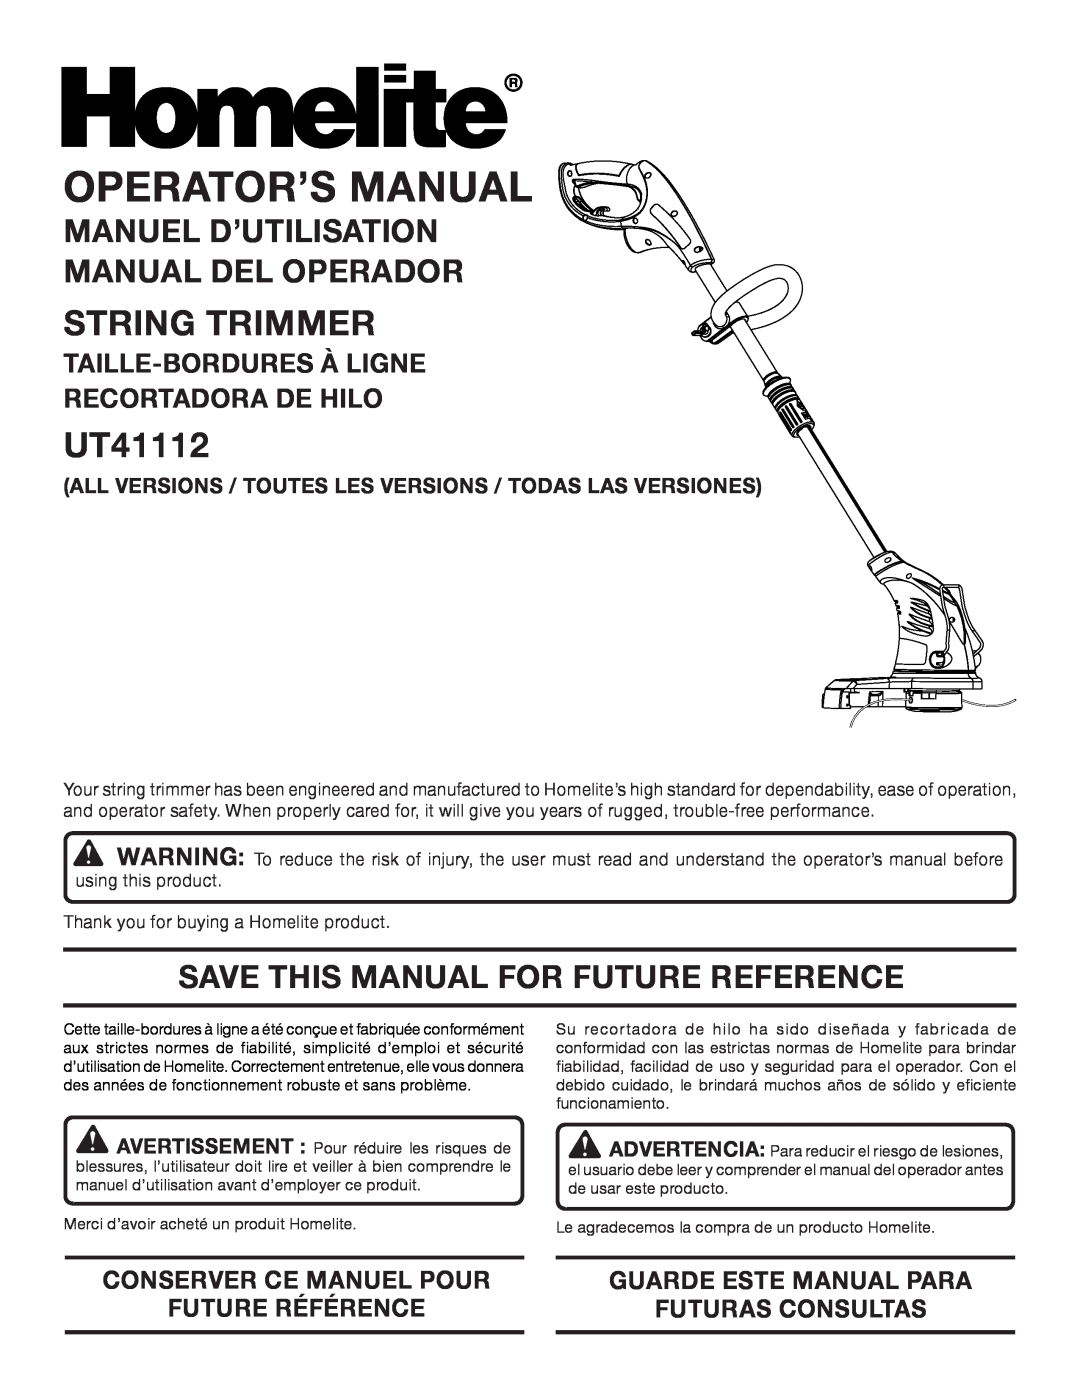 Homelite UT41112 manuel dutilisation String Trimmer, Manuel D’Utilisation Manual Del Operador, Operator’S Manual 